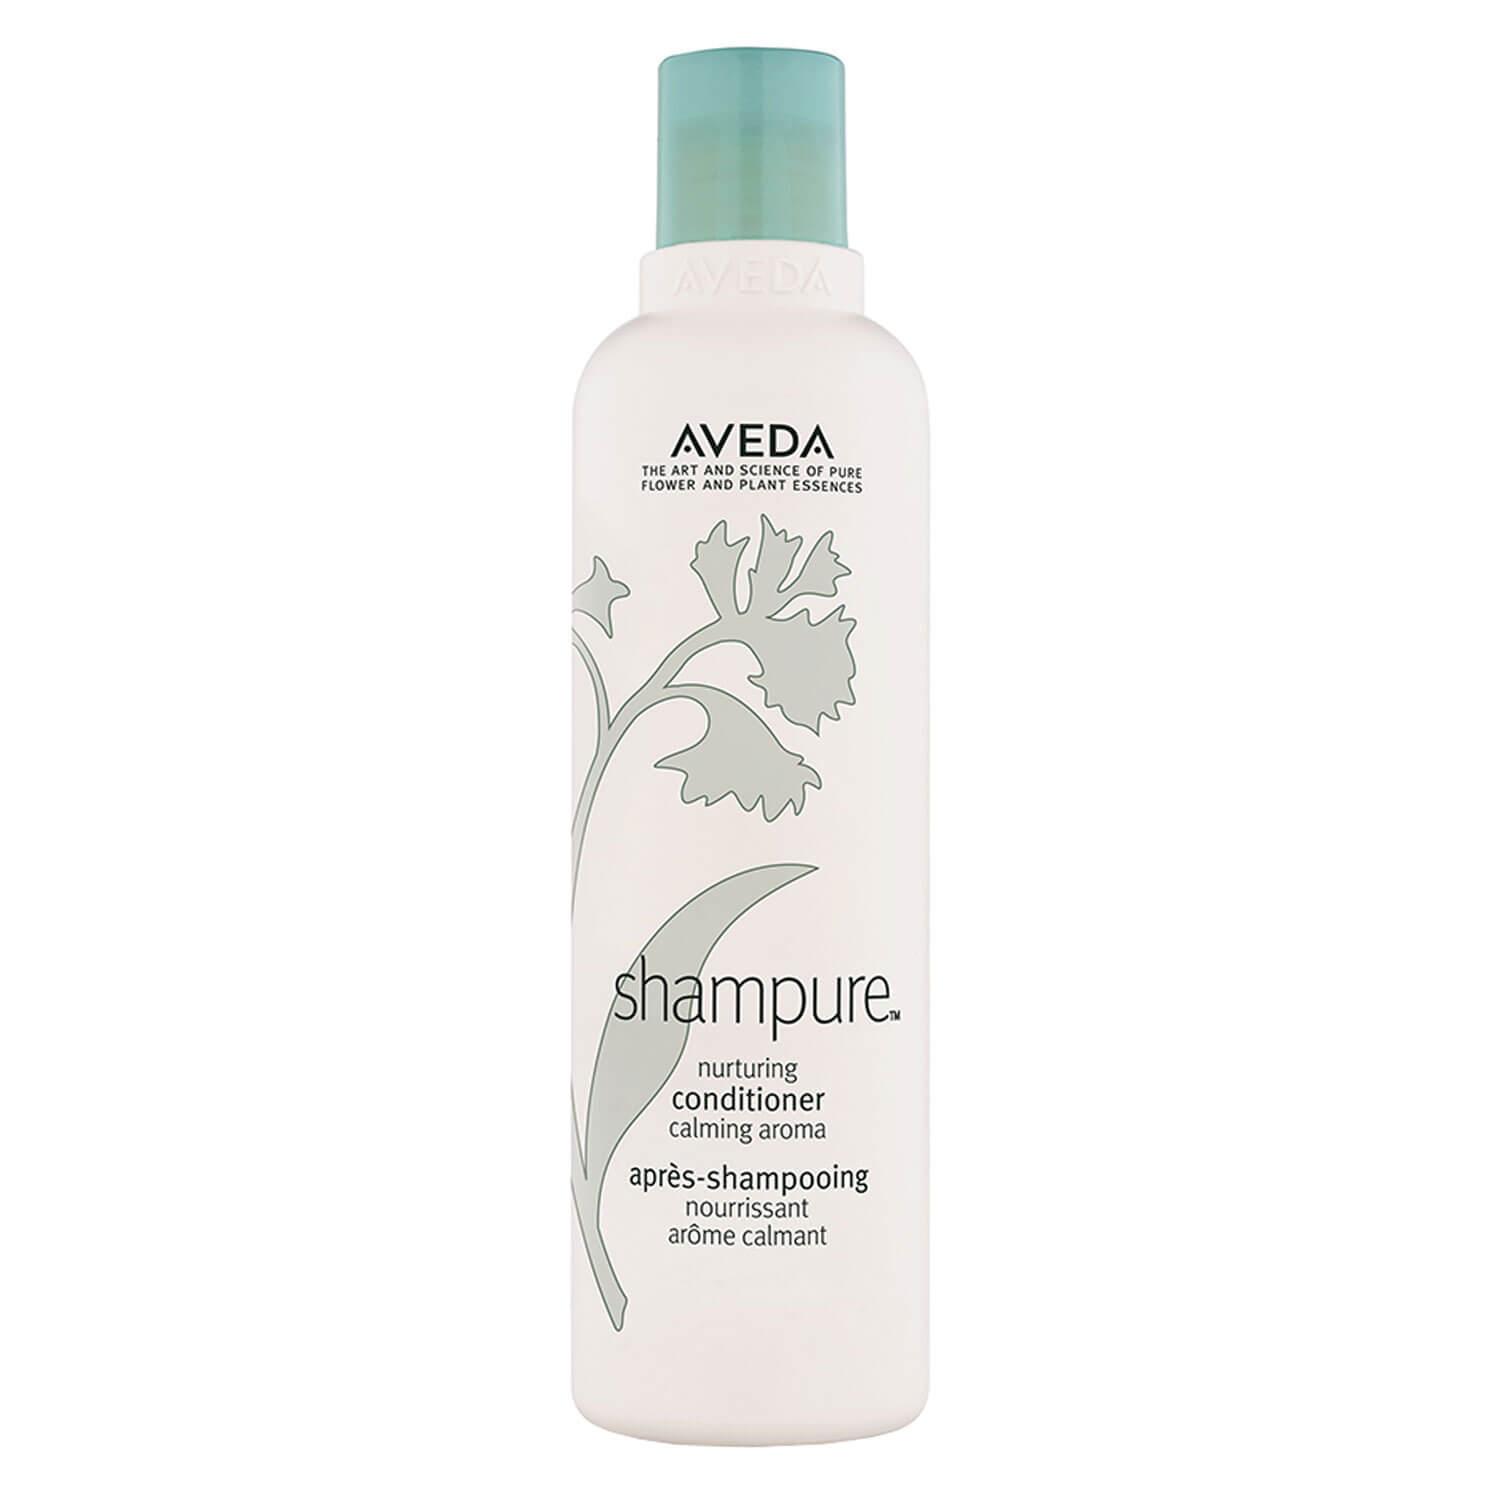 shampure - nurturing conditioner